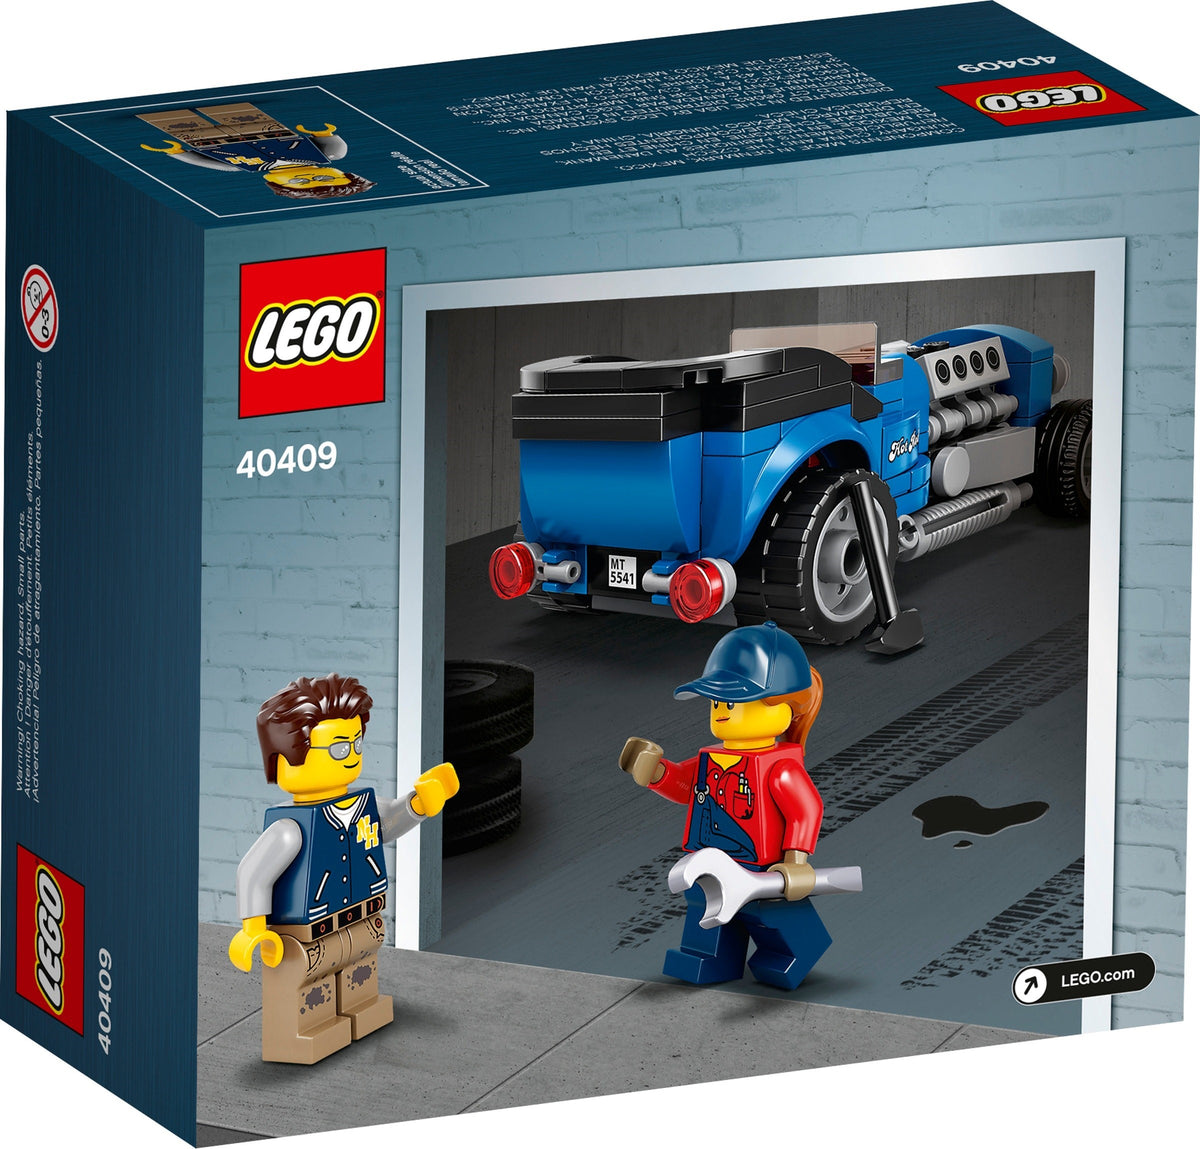 LEGO Promotional Lego Exklusiv 40409 Hot Rod